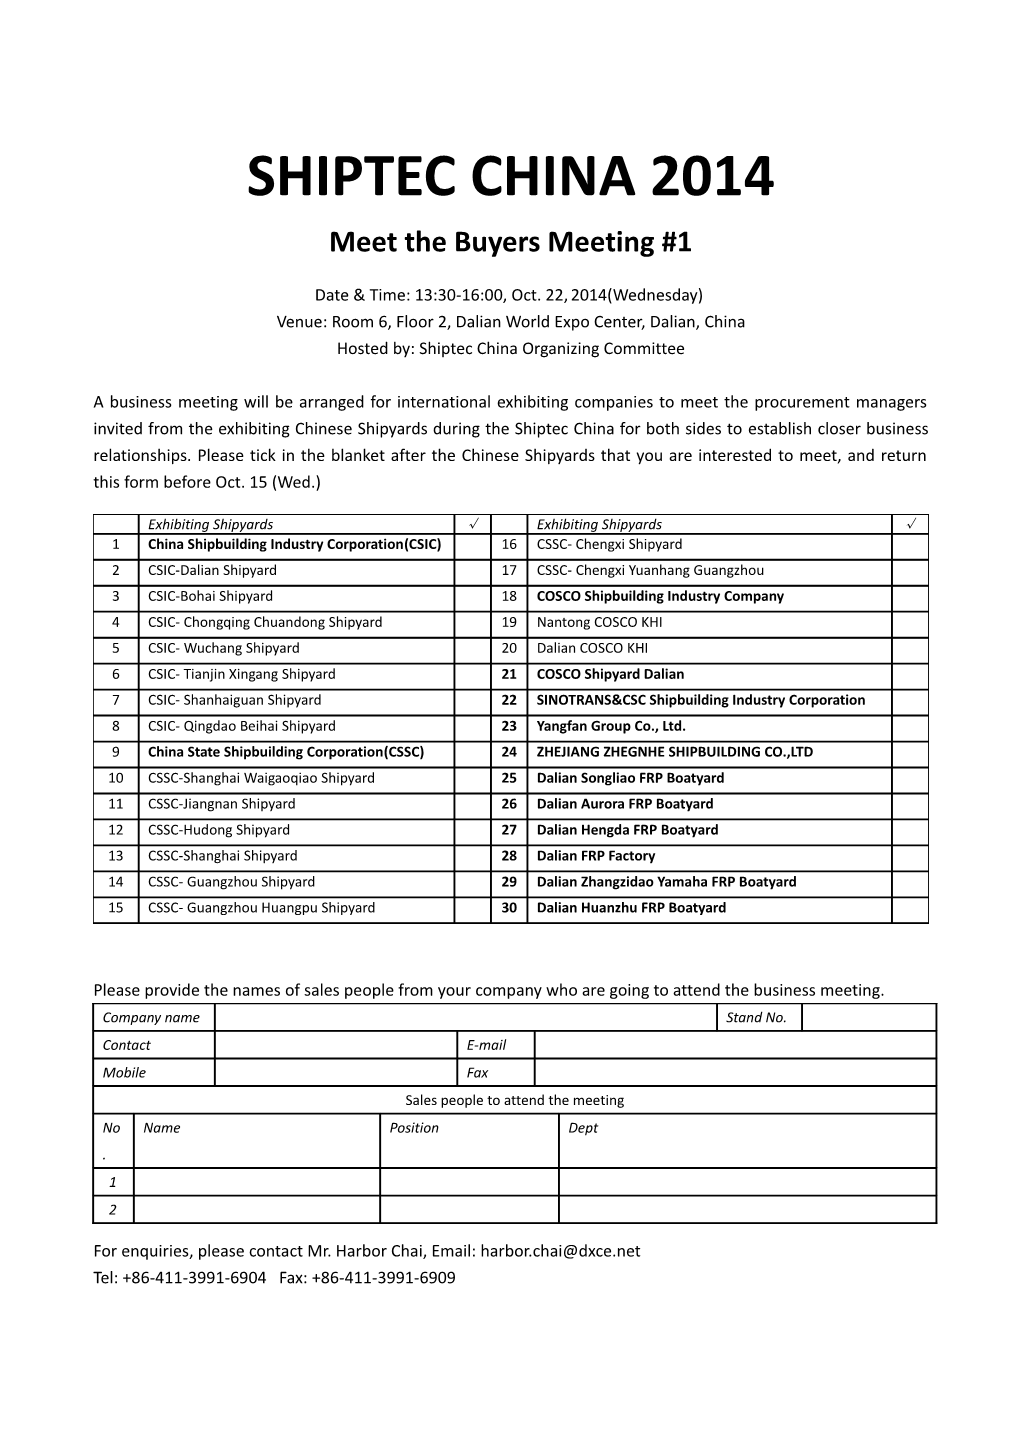 Meet the Buyers Meeting #1